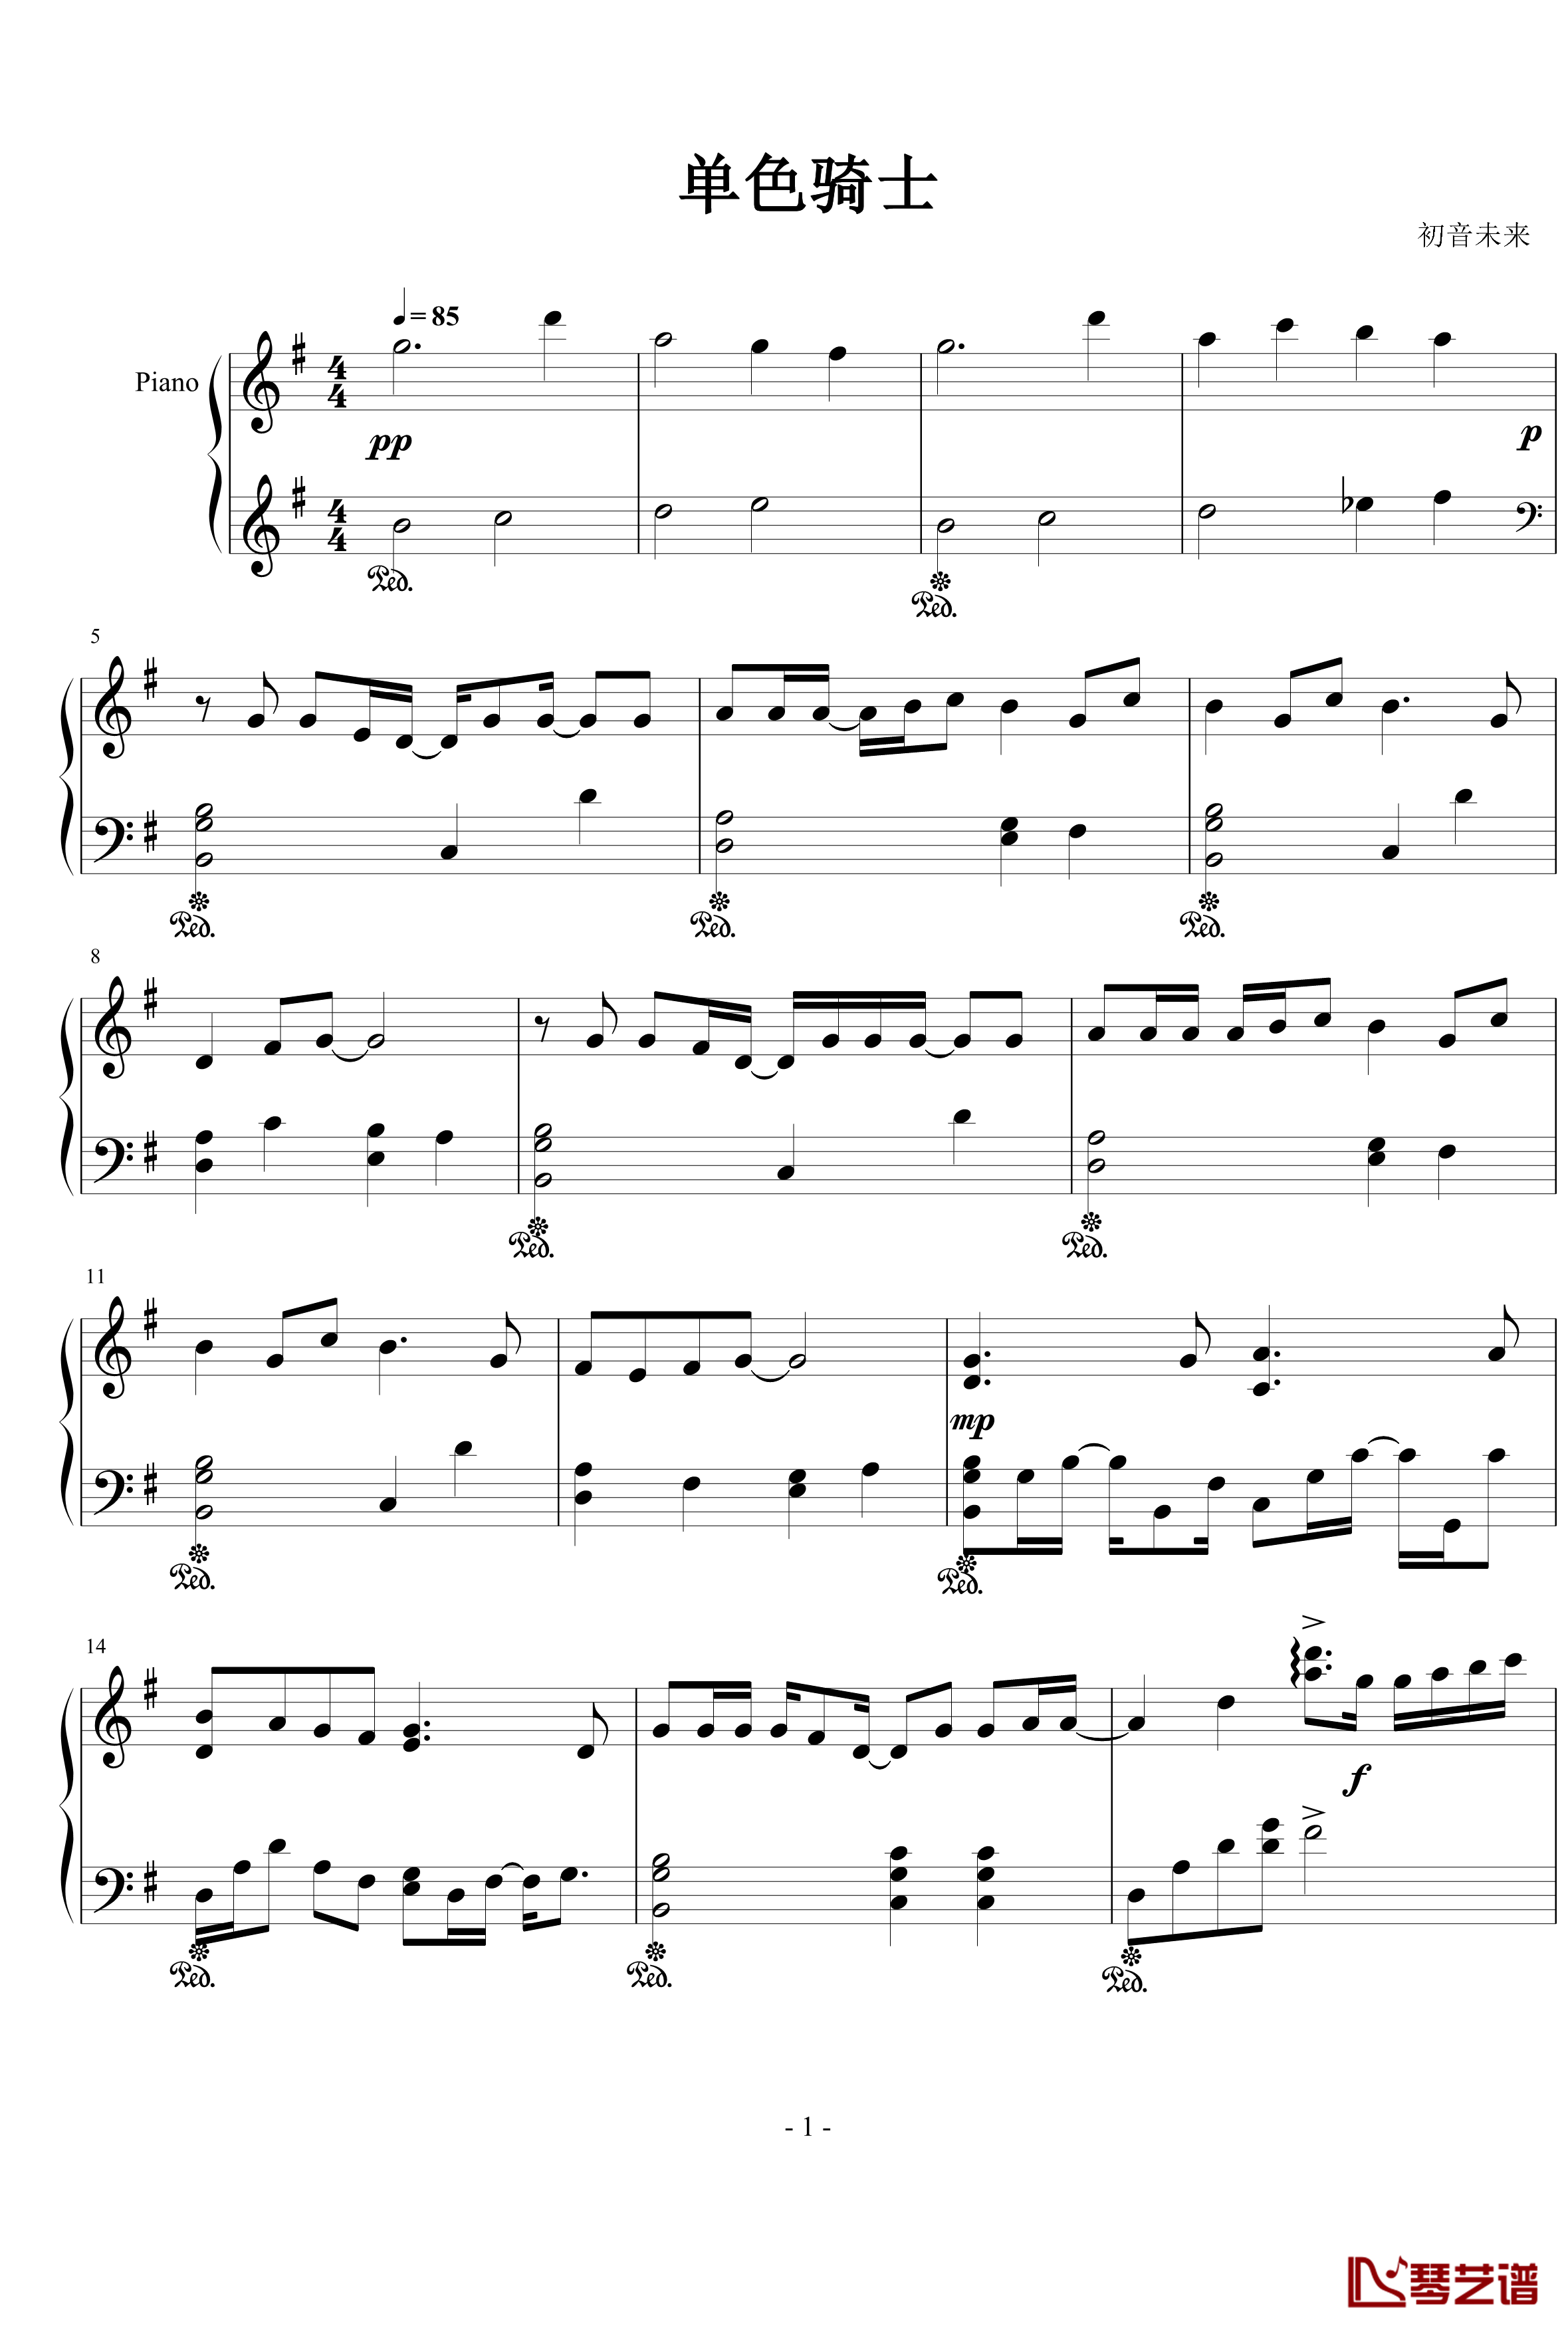 モノクロナイト钢琴谱-单色骑士-初音未来1